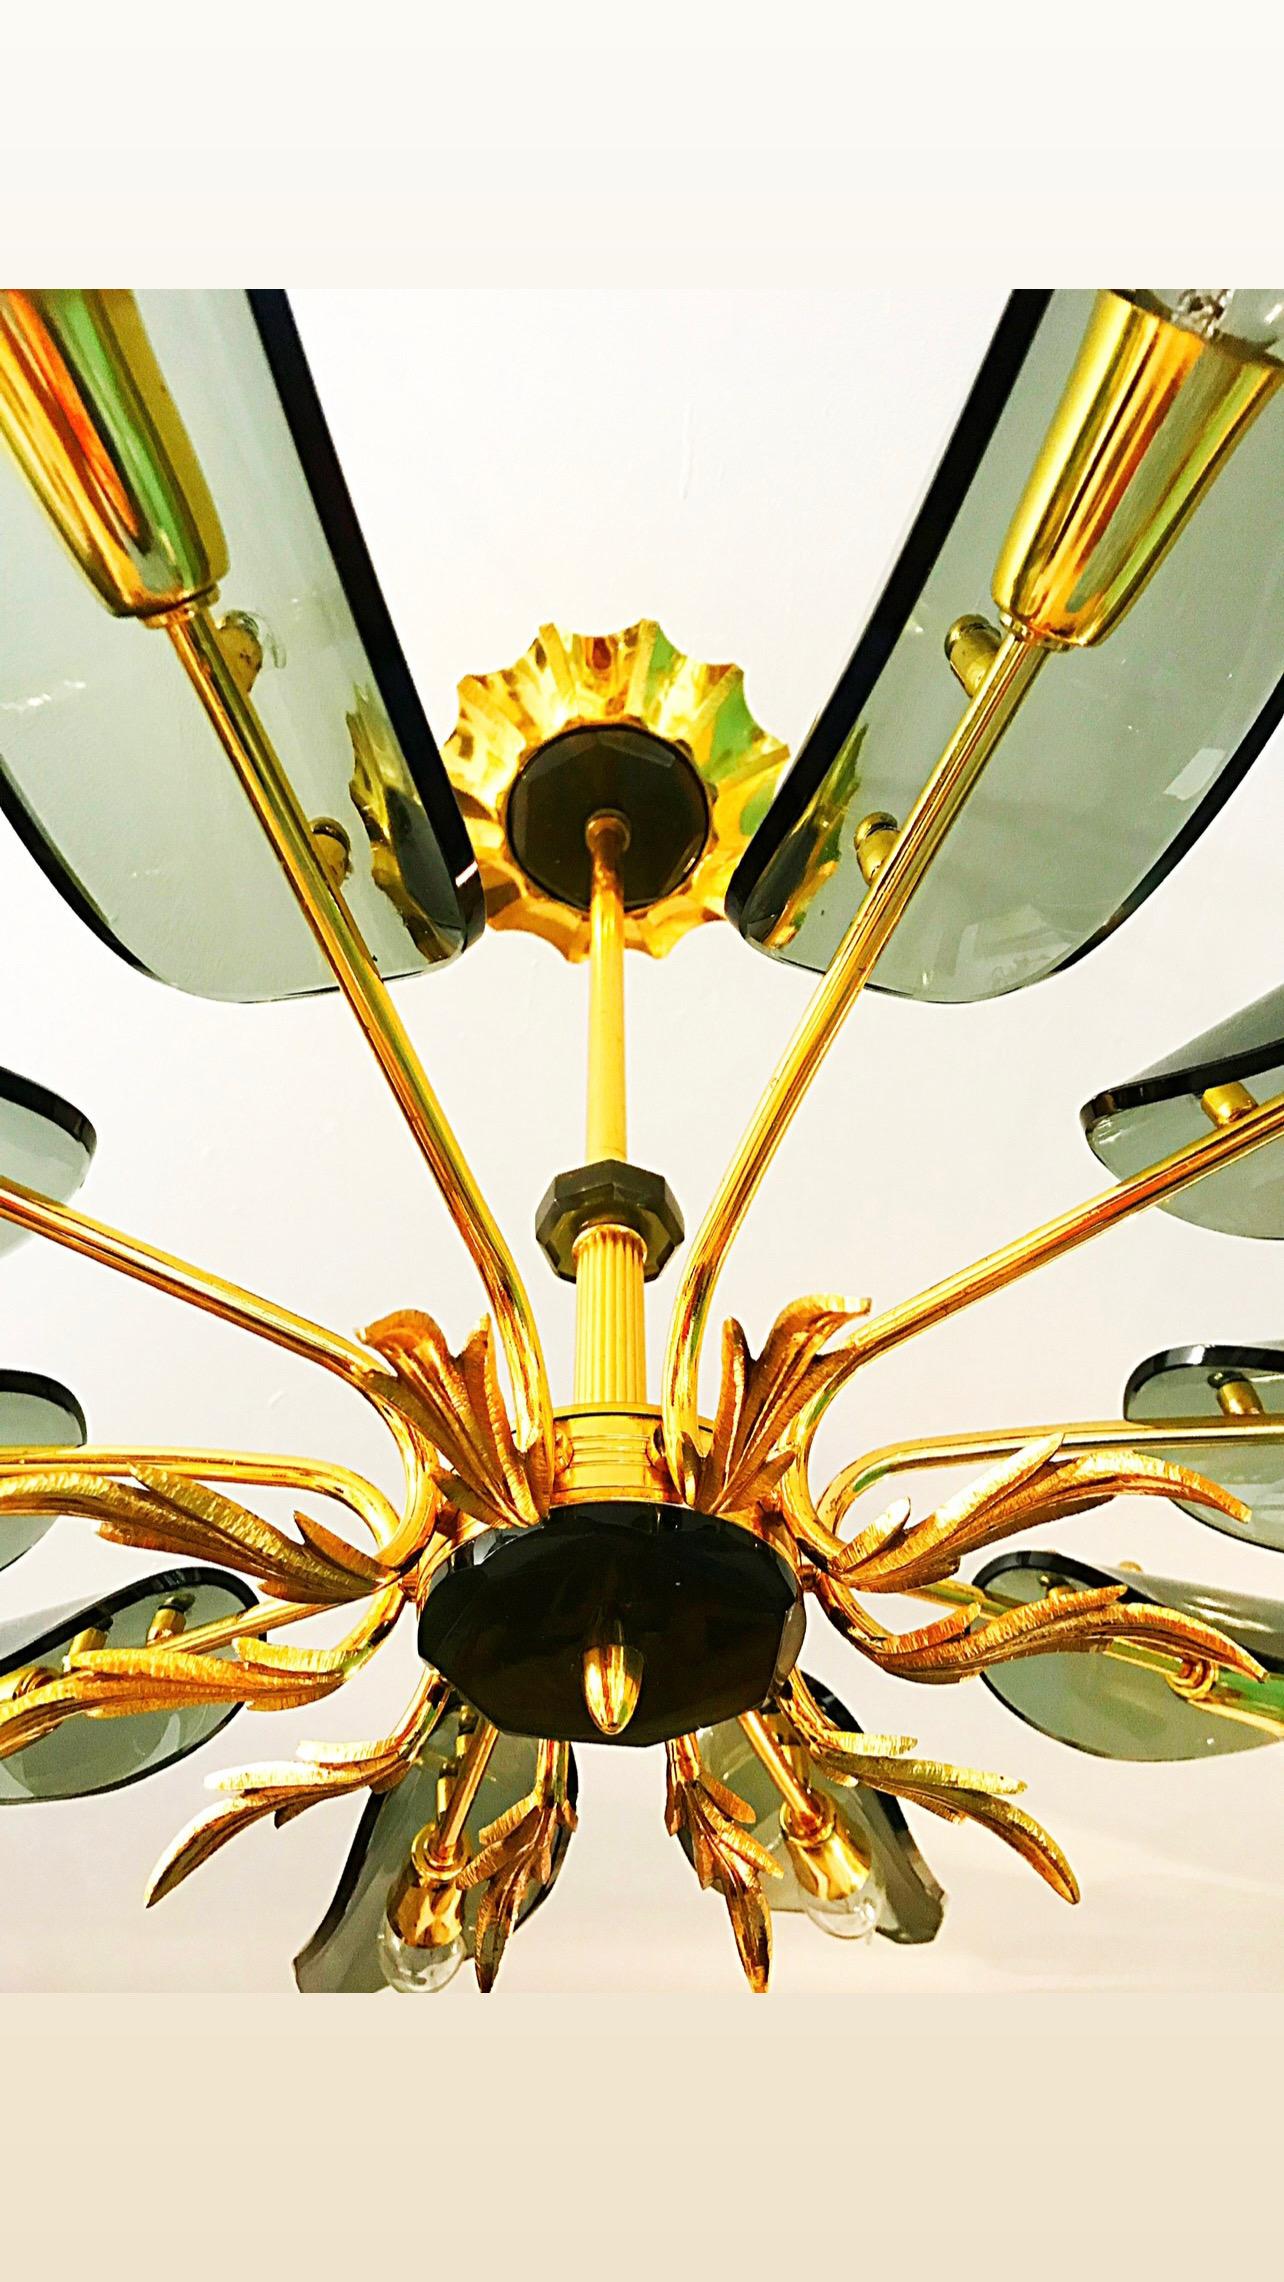 Superb Kronleuchter mit Glas übergroßen 103 cm mit vergoldetem Gold Struktur. Das Design und die Qualität des Glases machen aus diesem Stück das Beste des italienischen Designs.

Diese Kunstgläser zeigen das exklusive Design eines italienischen